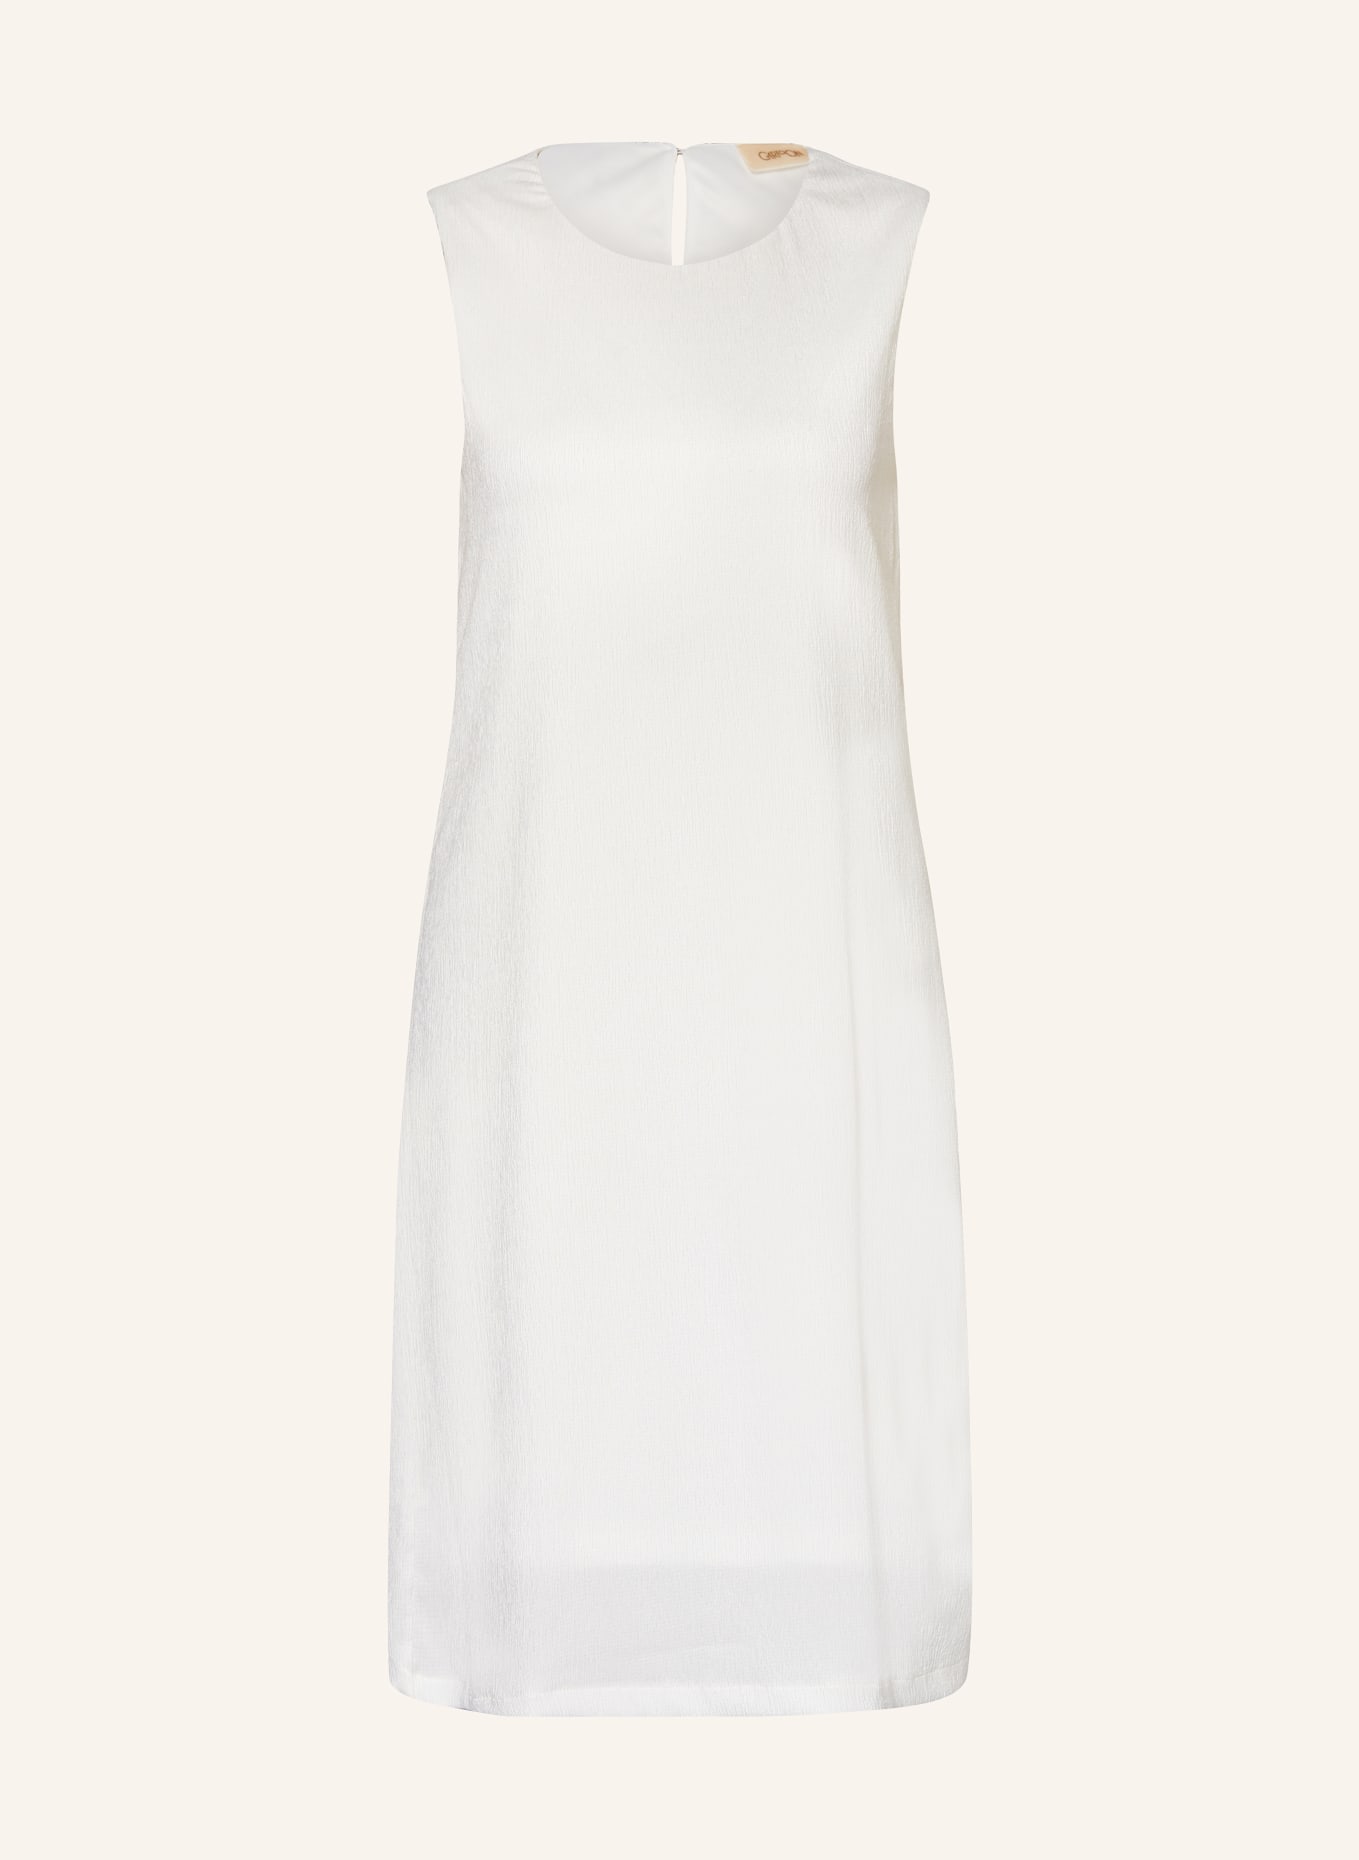 CARTOON Kleid, Farbe: CREME (Bild 1)